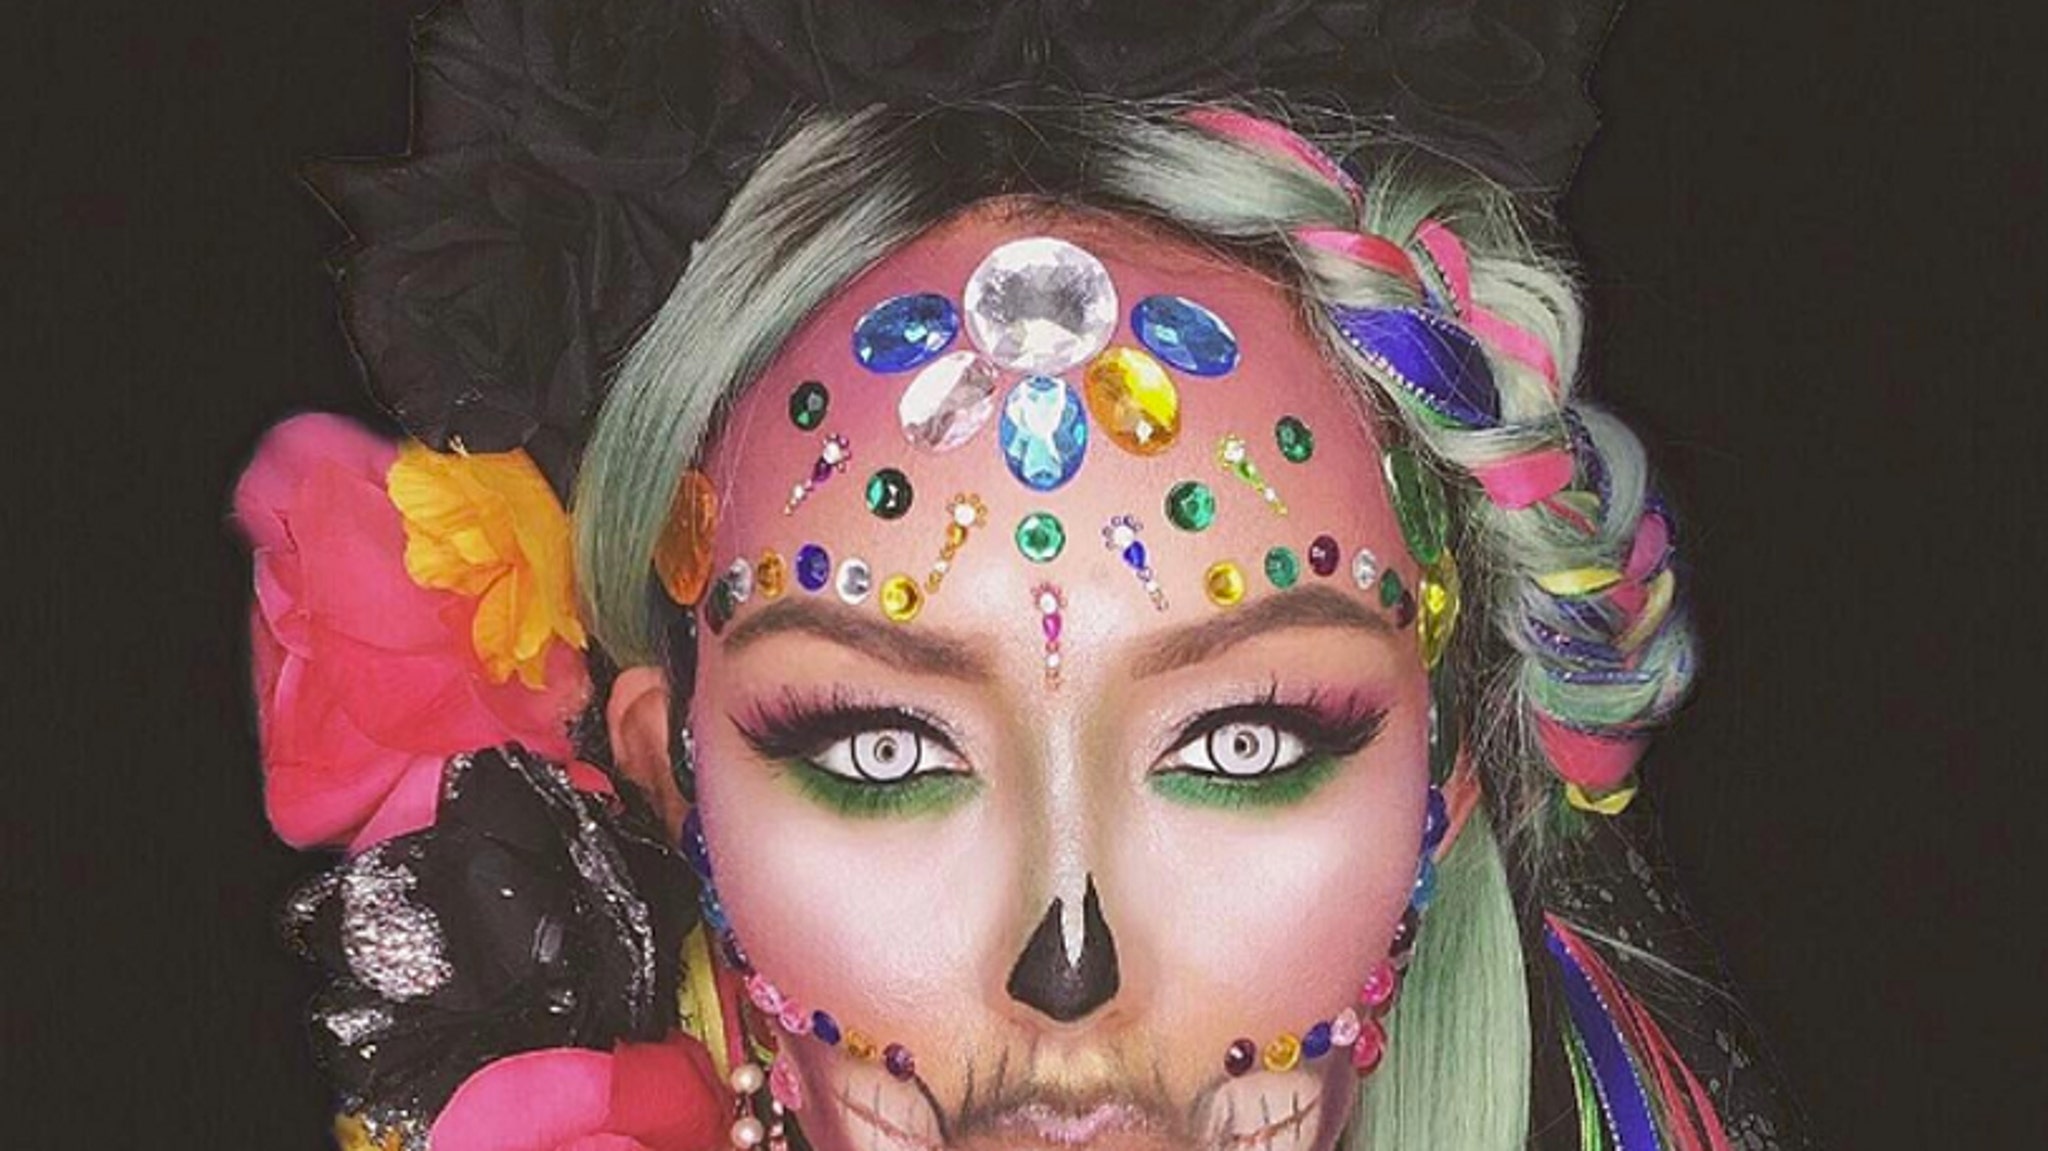 Aubrey O’Day’s Insane Halloween Face Paint